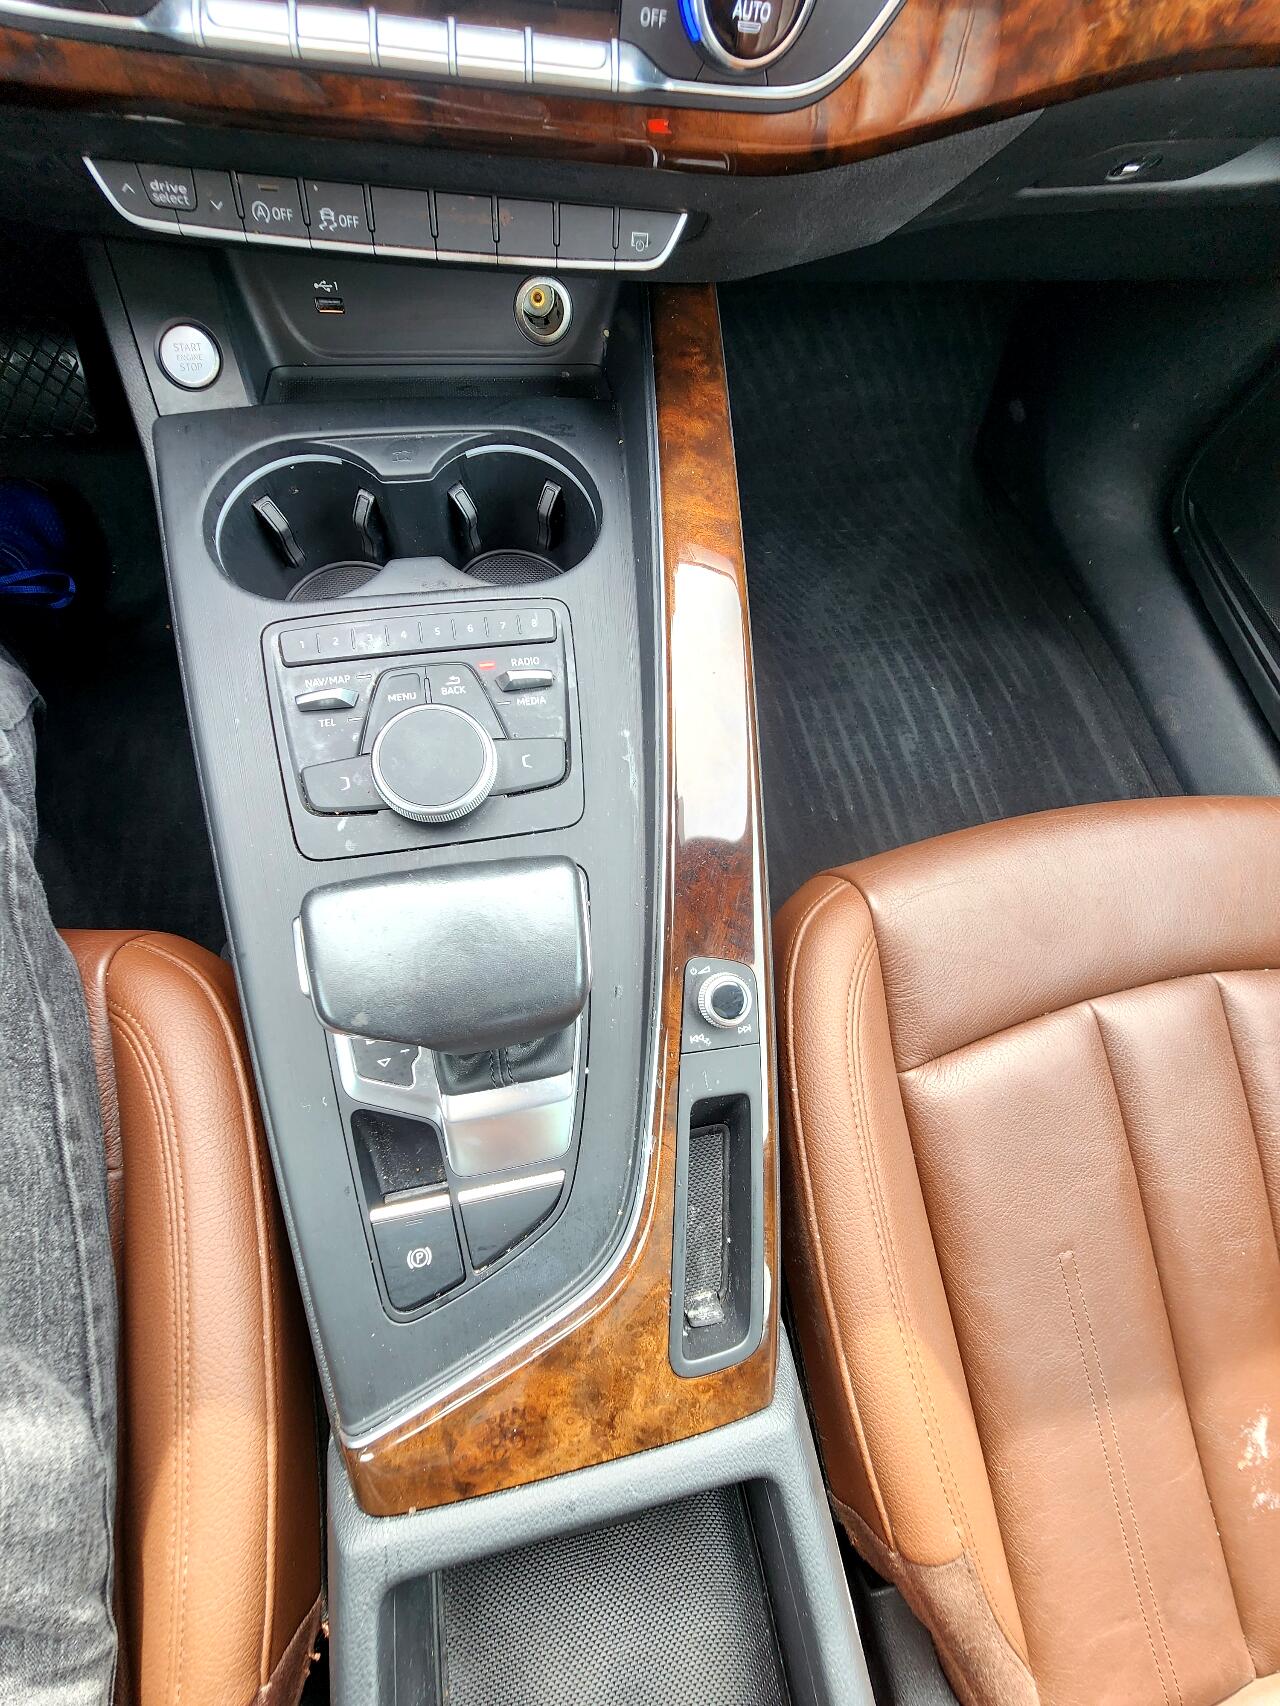 2019 AUDI A4 Sedan - $21,999